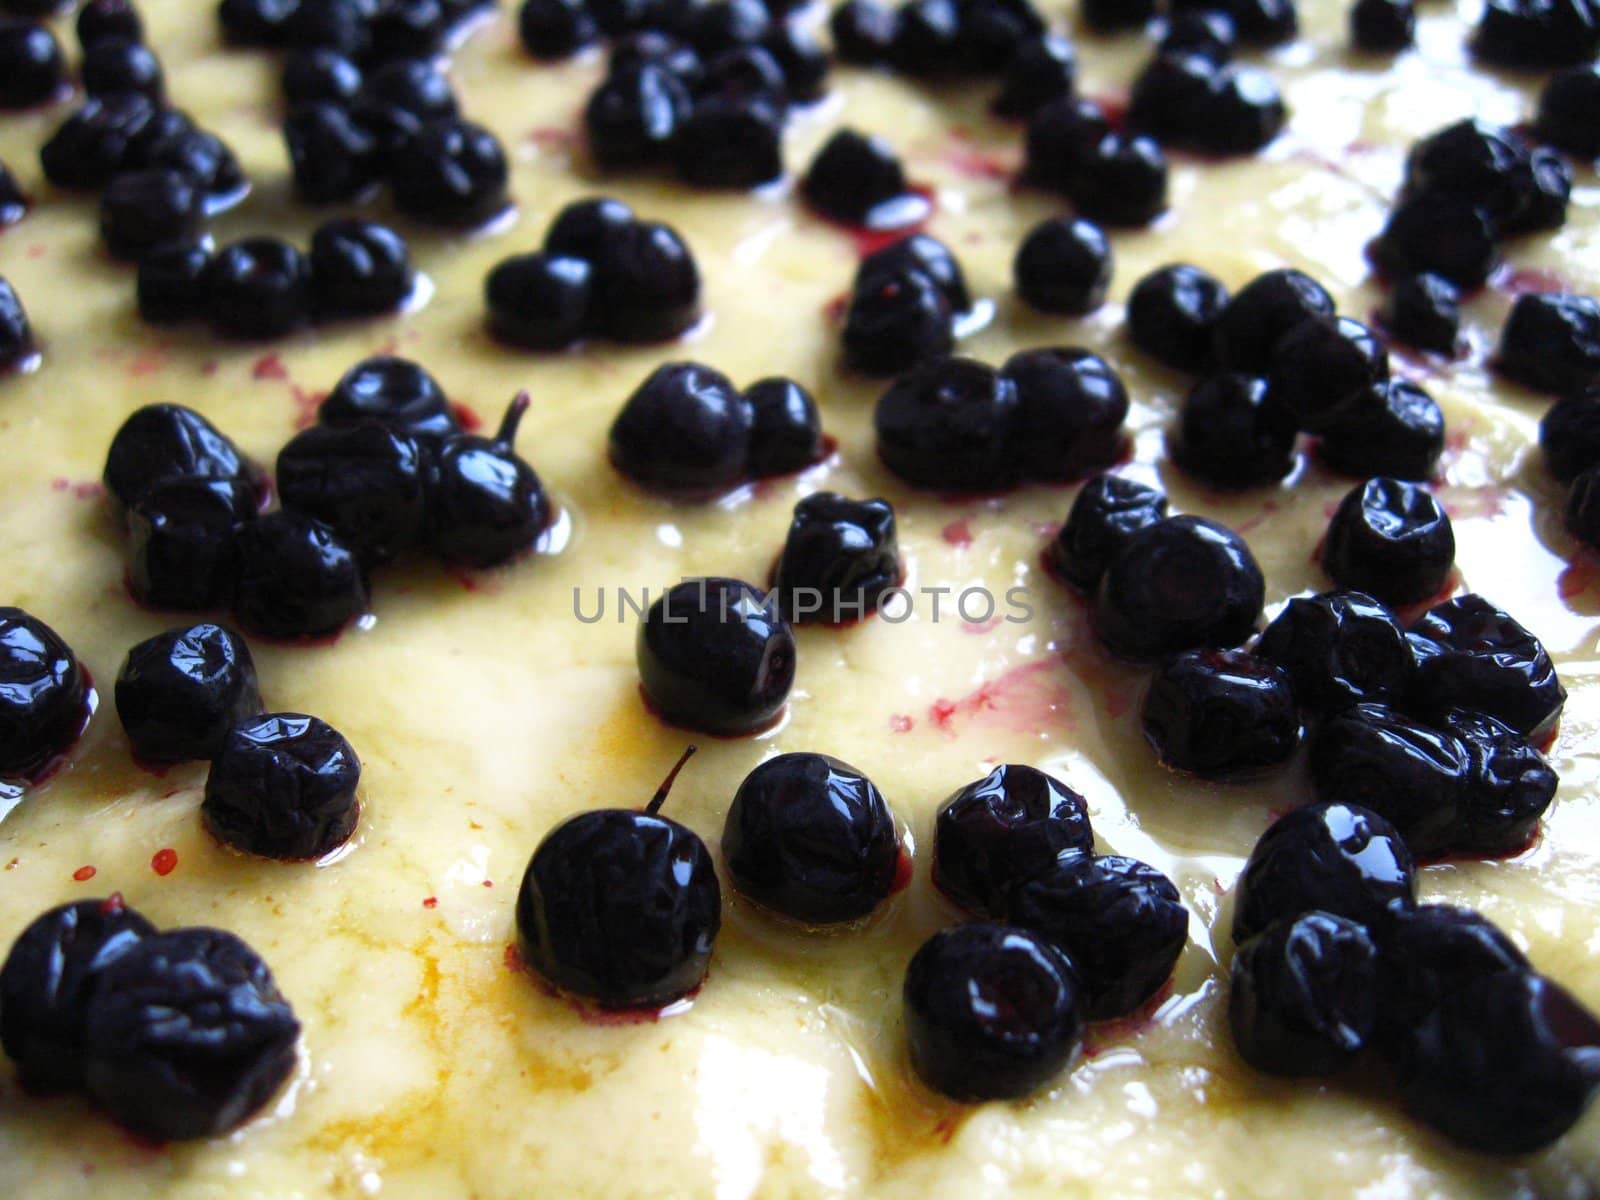 Fresh pie with bilberry by alexmak